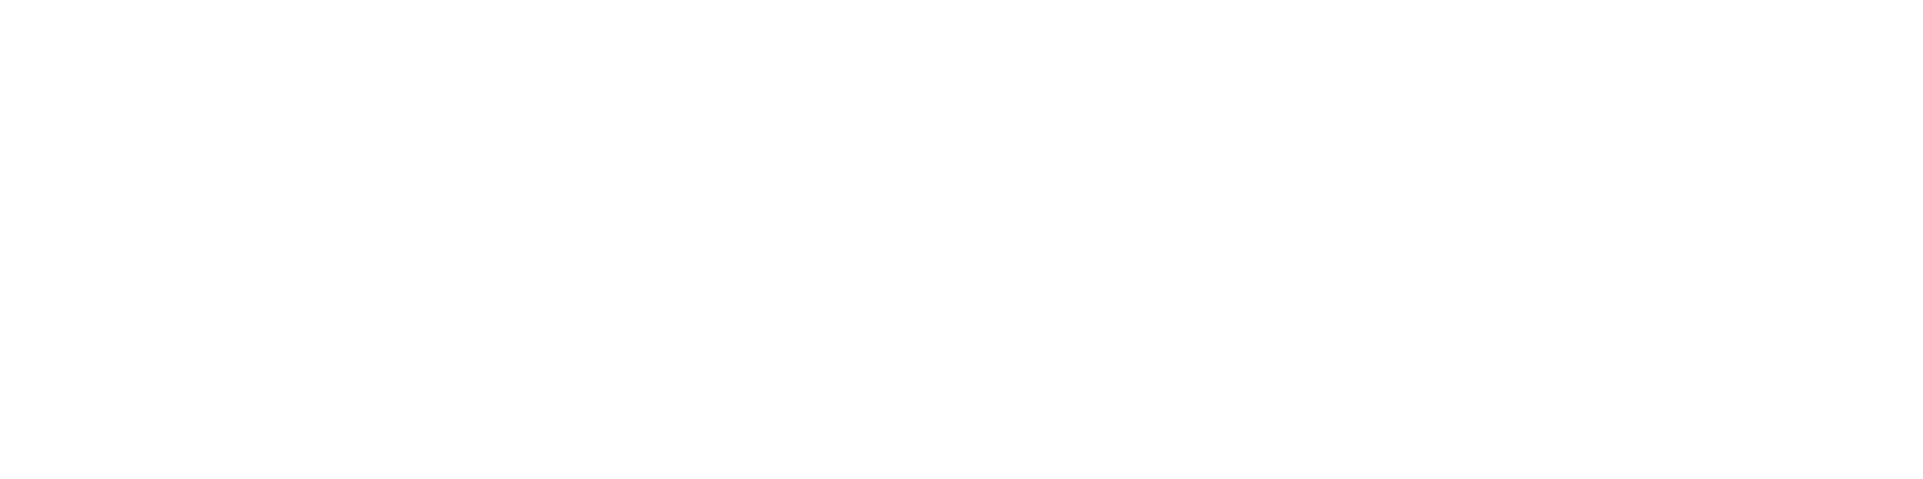 ESPN white logo